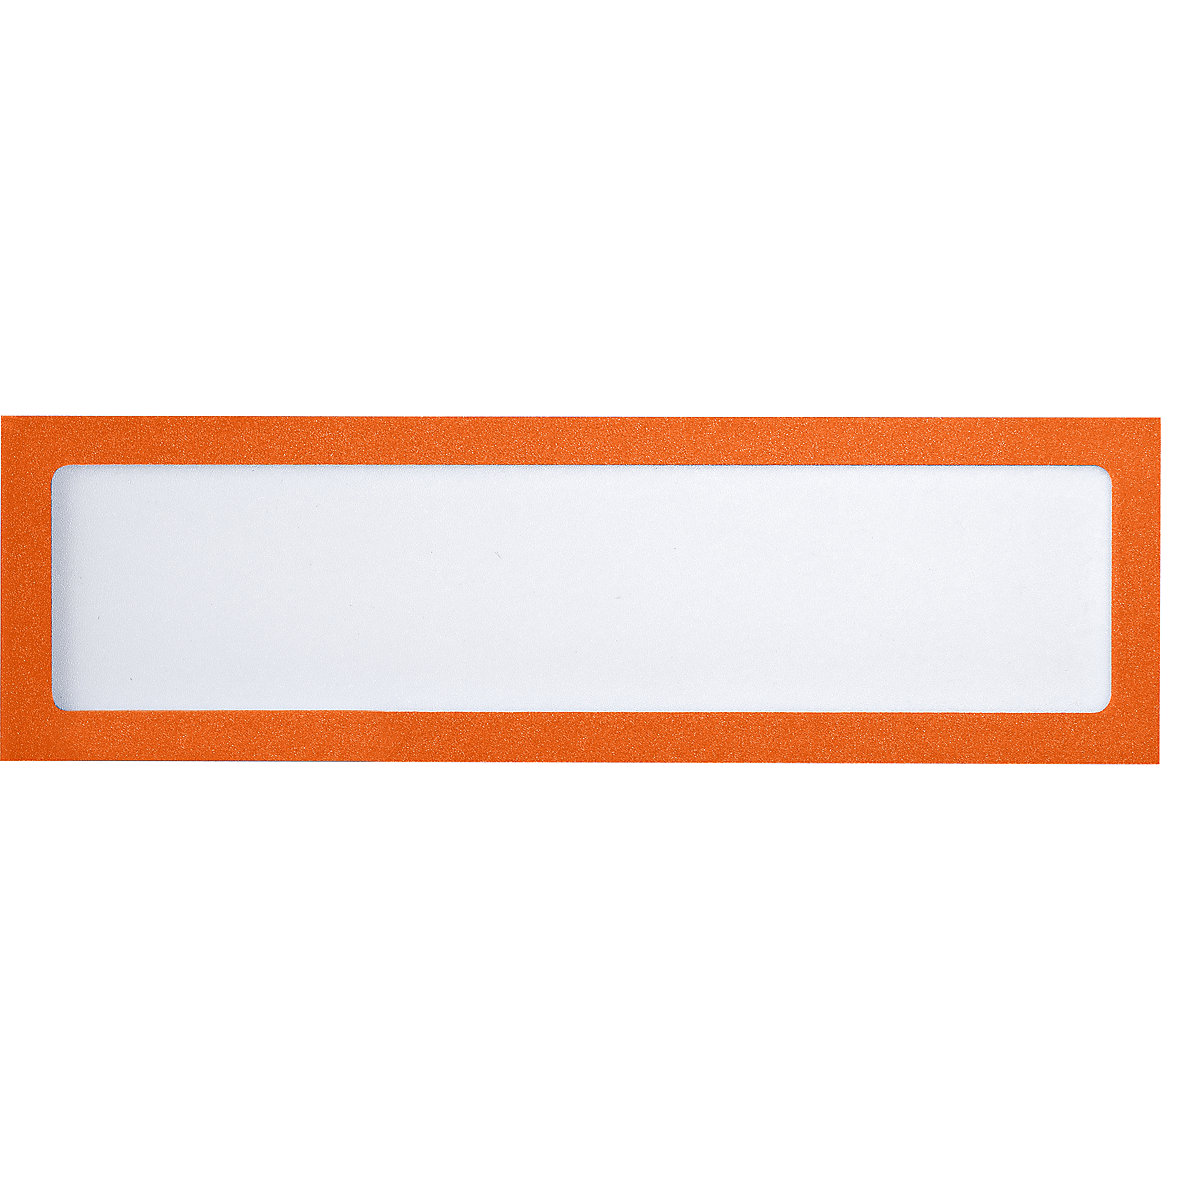 Magnetic display pocket – eurokraft basic, for headings, A4 portrait / A5 landscape, 225 x 60 mm, orange frame, pack of 10-5